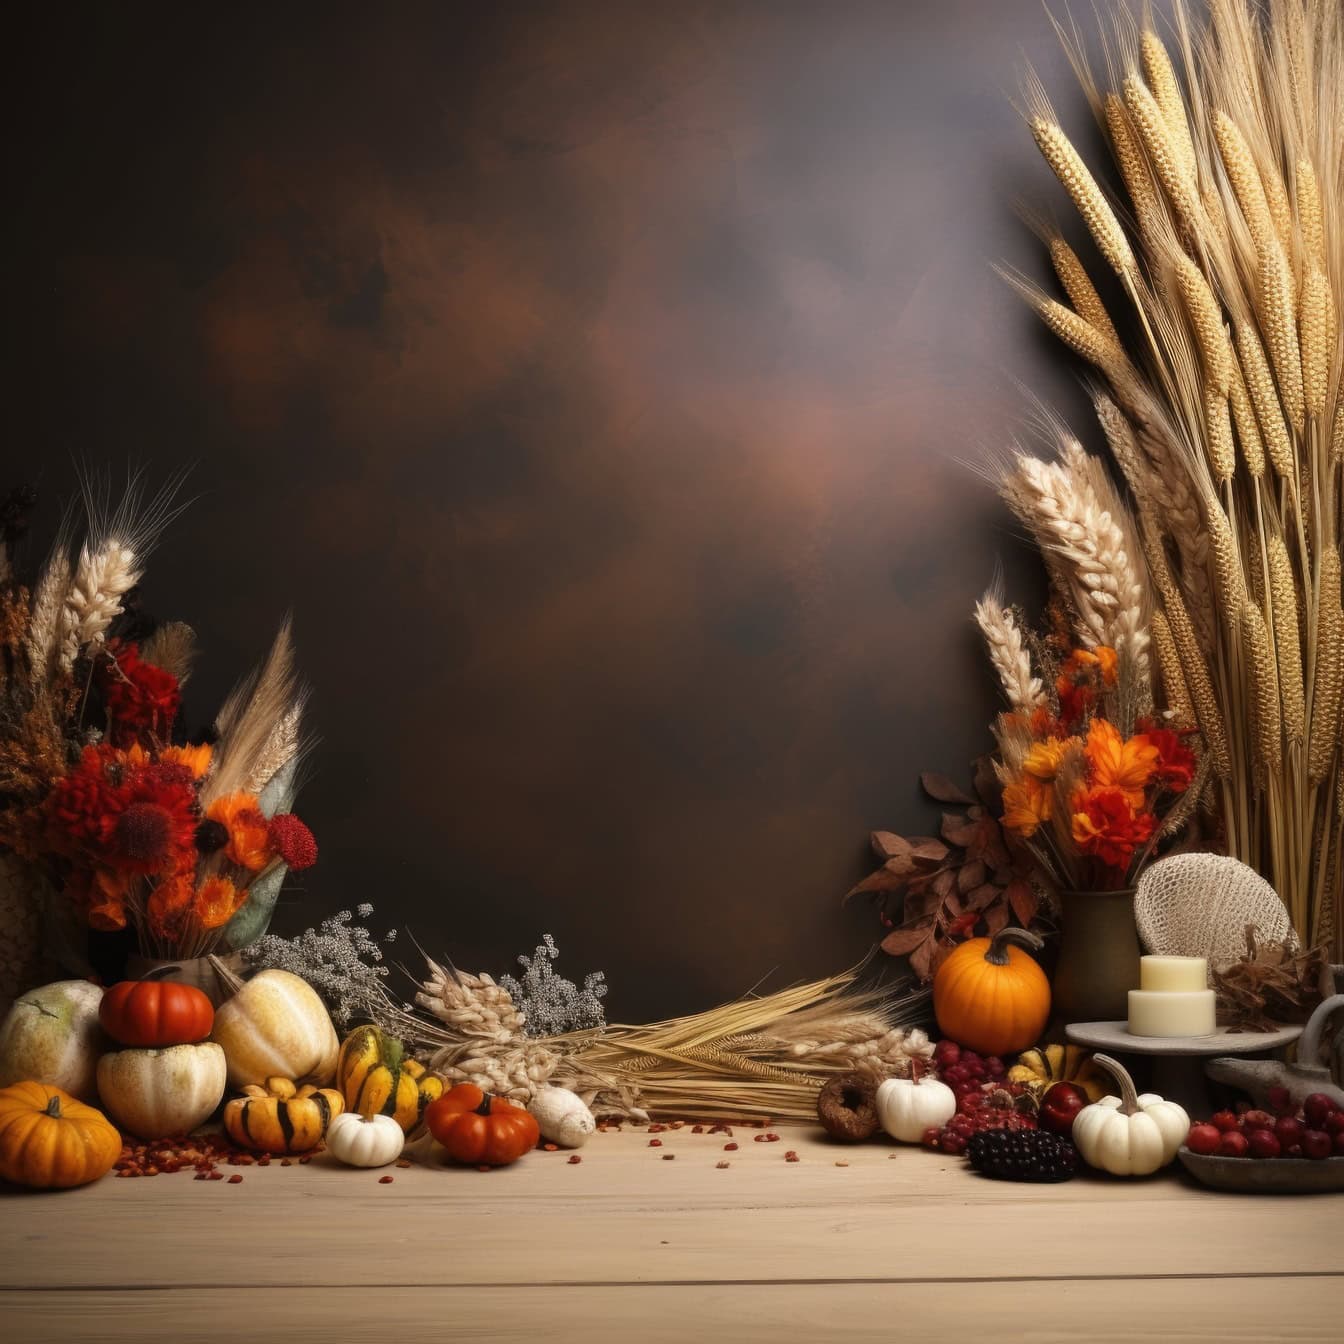 Dynie i pszenica na stole, ilustracja szablonu dziękczynnego z kompozycją martwej natury